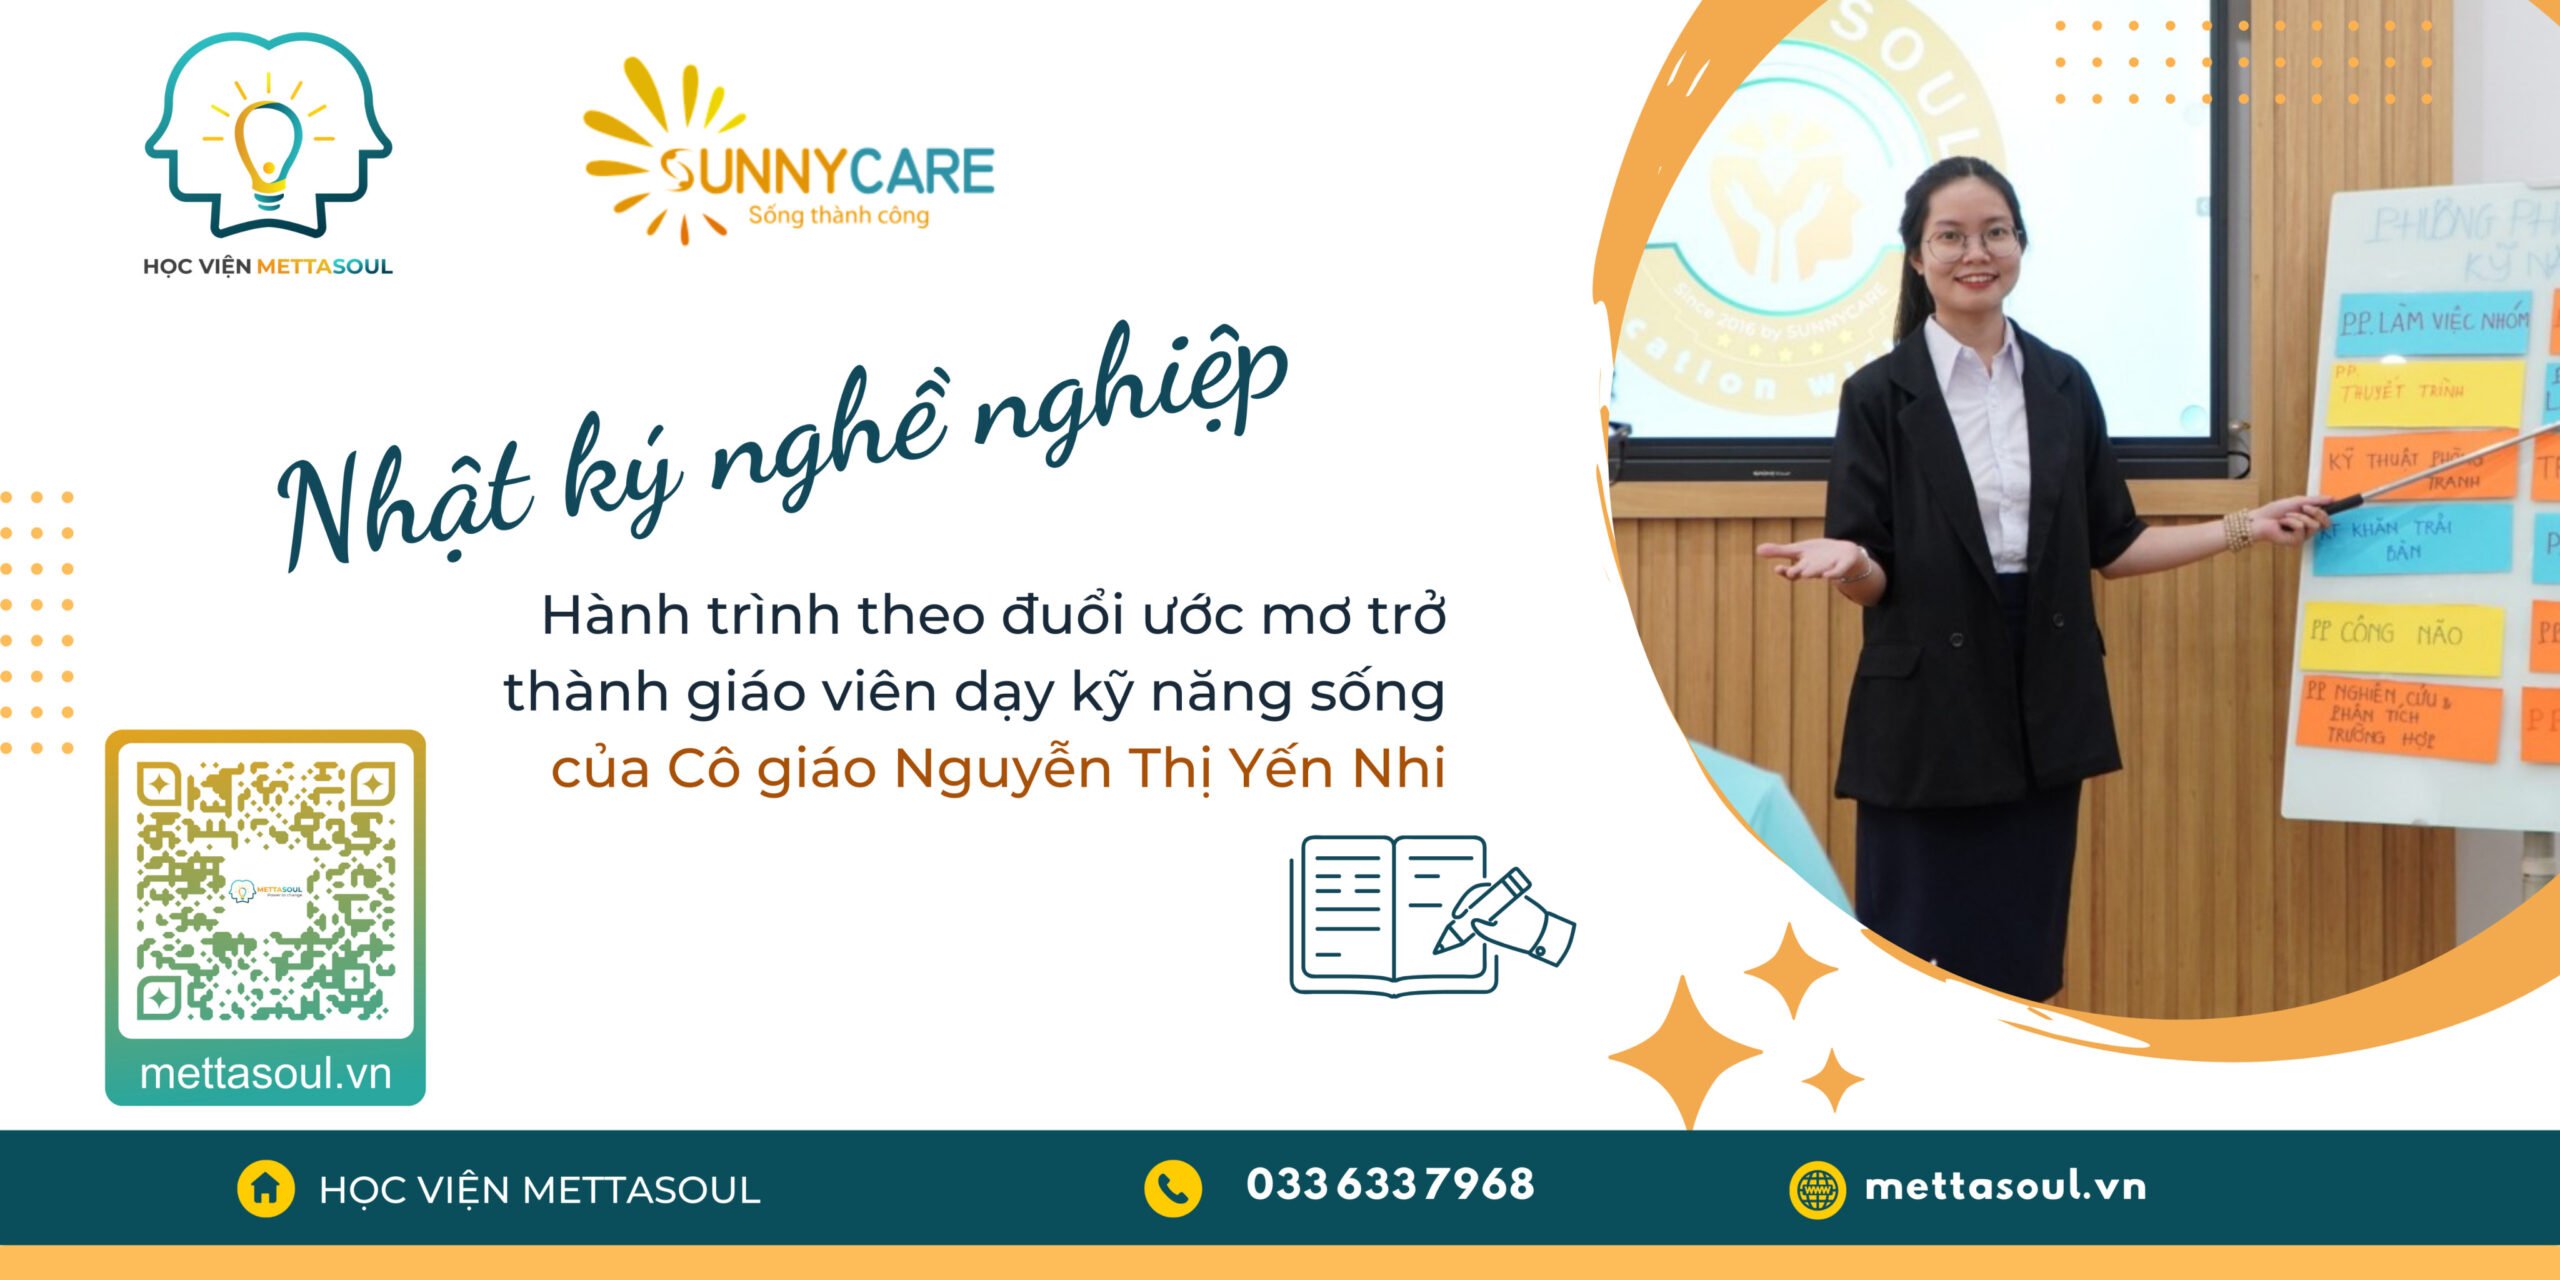 Nhật ký hướng nghiệp - Hành trình theo đuổi ước mơ Giáo viên kỹ năng sống của Nguyễn Thị Yến Nhi